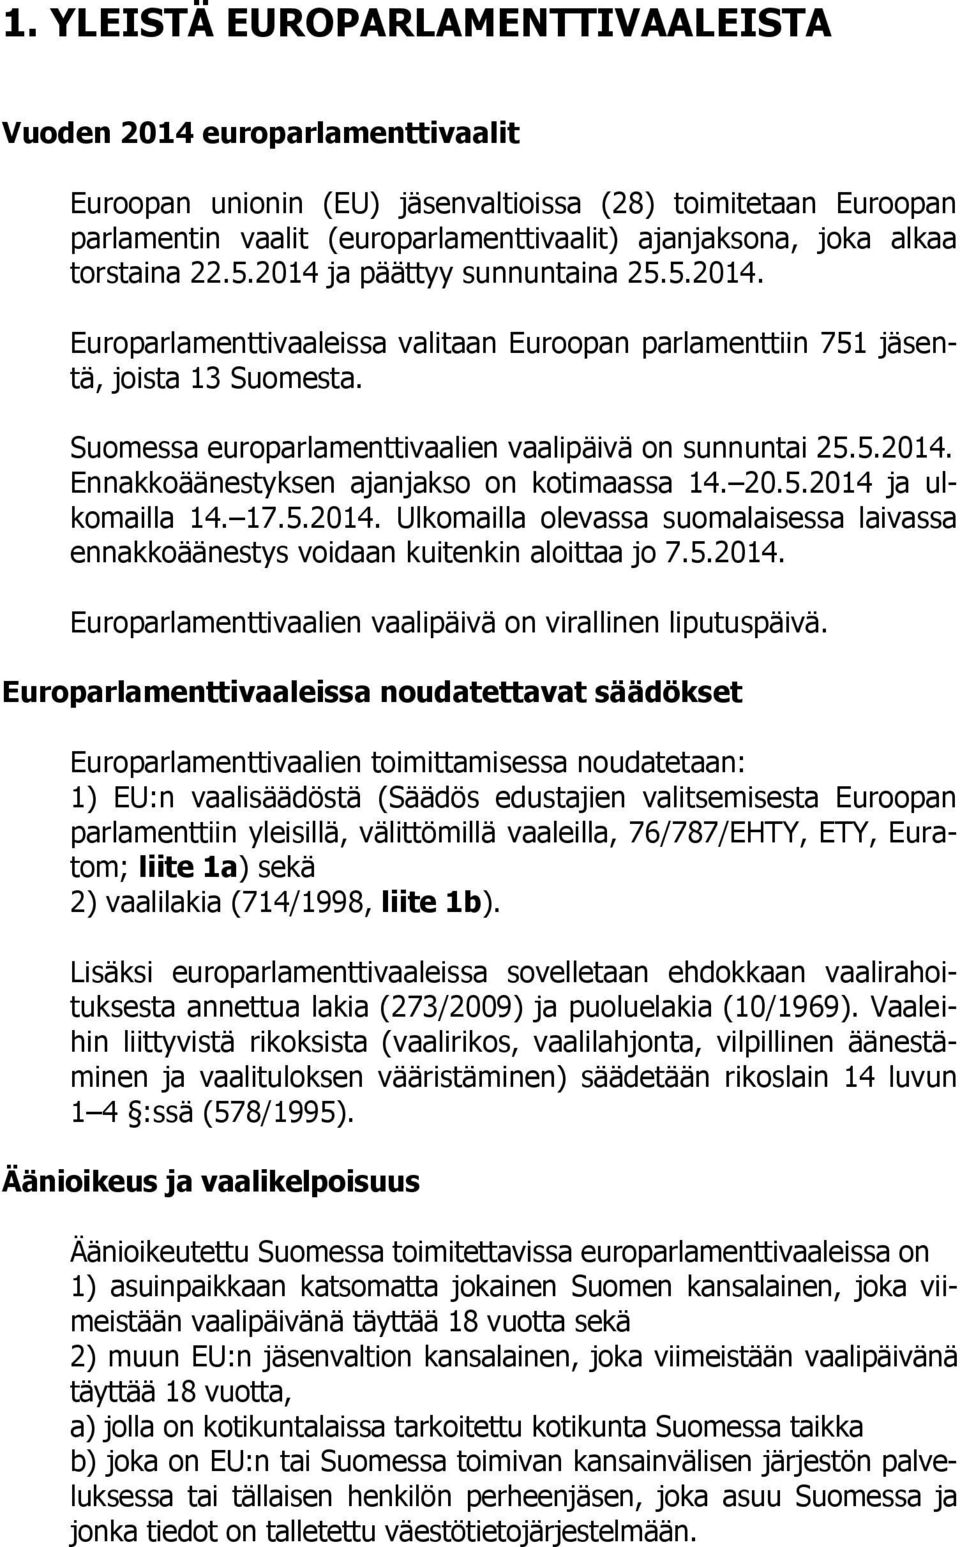 Suomessa europarlamenttivaalien vaalipäivä on sunnuntai 25.5.2014. Ennakkoäänestyksen ajanjakso on kotimaassa 14. 20.5.2014 ja ulkomailla 14. 17.5.2014. Ulkomailla olevassa suomalaisessa laivassa ennakkoäänestys voidaan kuitenkin aloittaa jo 7.